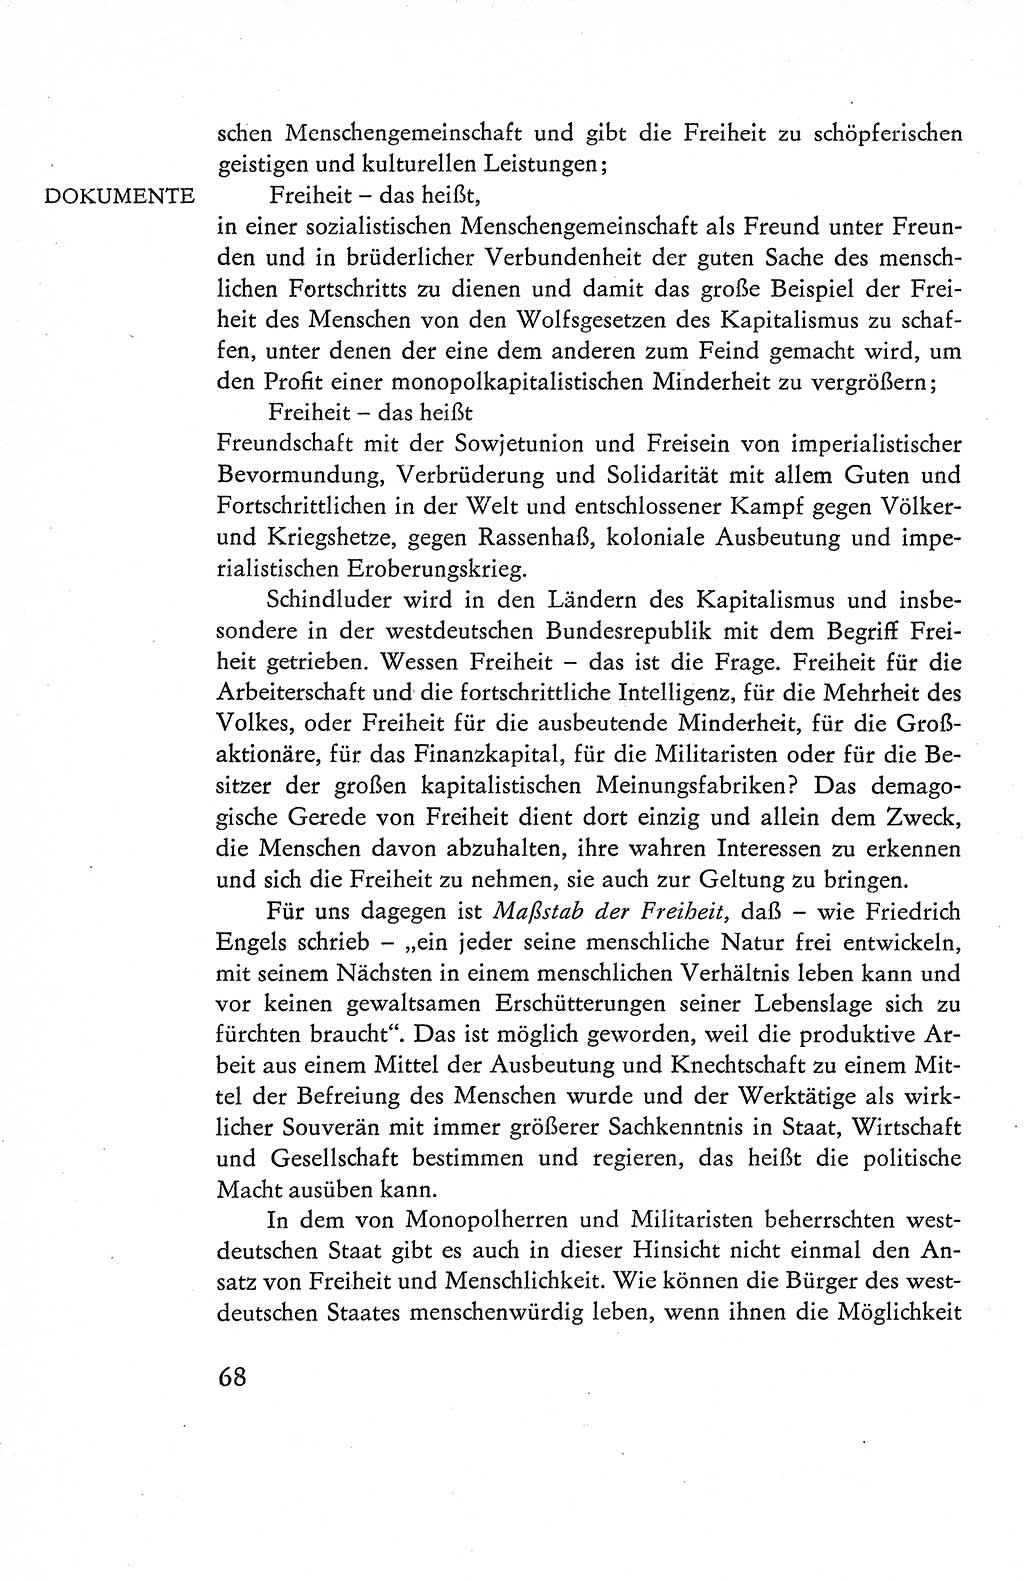 Verfassung der Deutschen Demokratischen Republik (DDR), Dokumente, Kommentar 1969, Band 1, Seite 68 (Verf. DDR Dok. Komm. 1969, Bd. 1, S. 68)